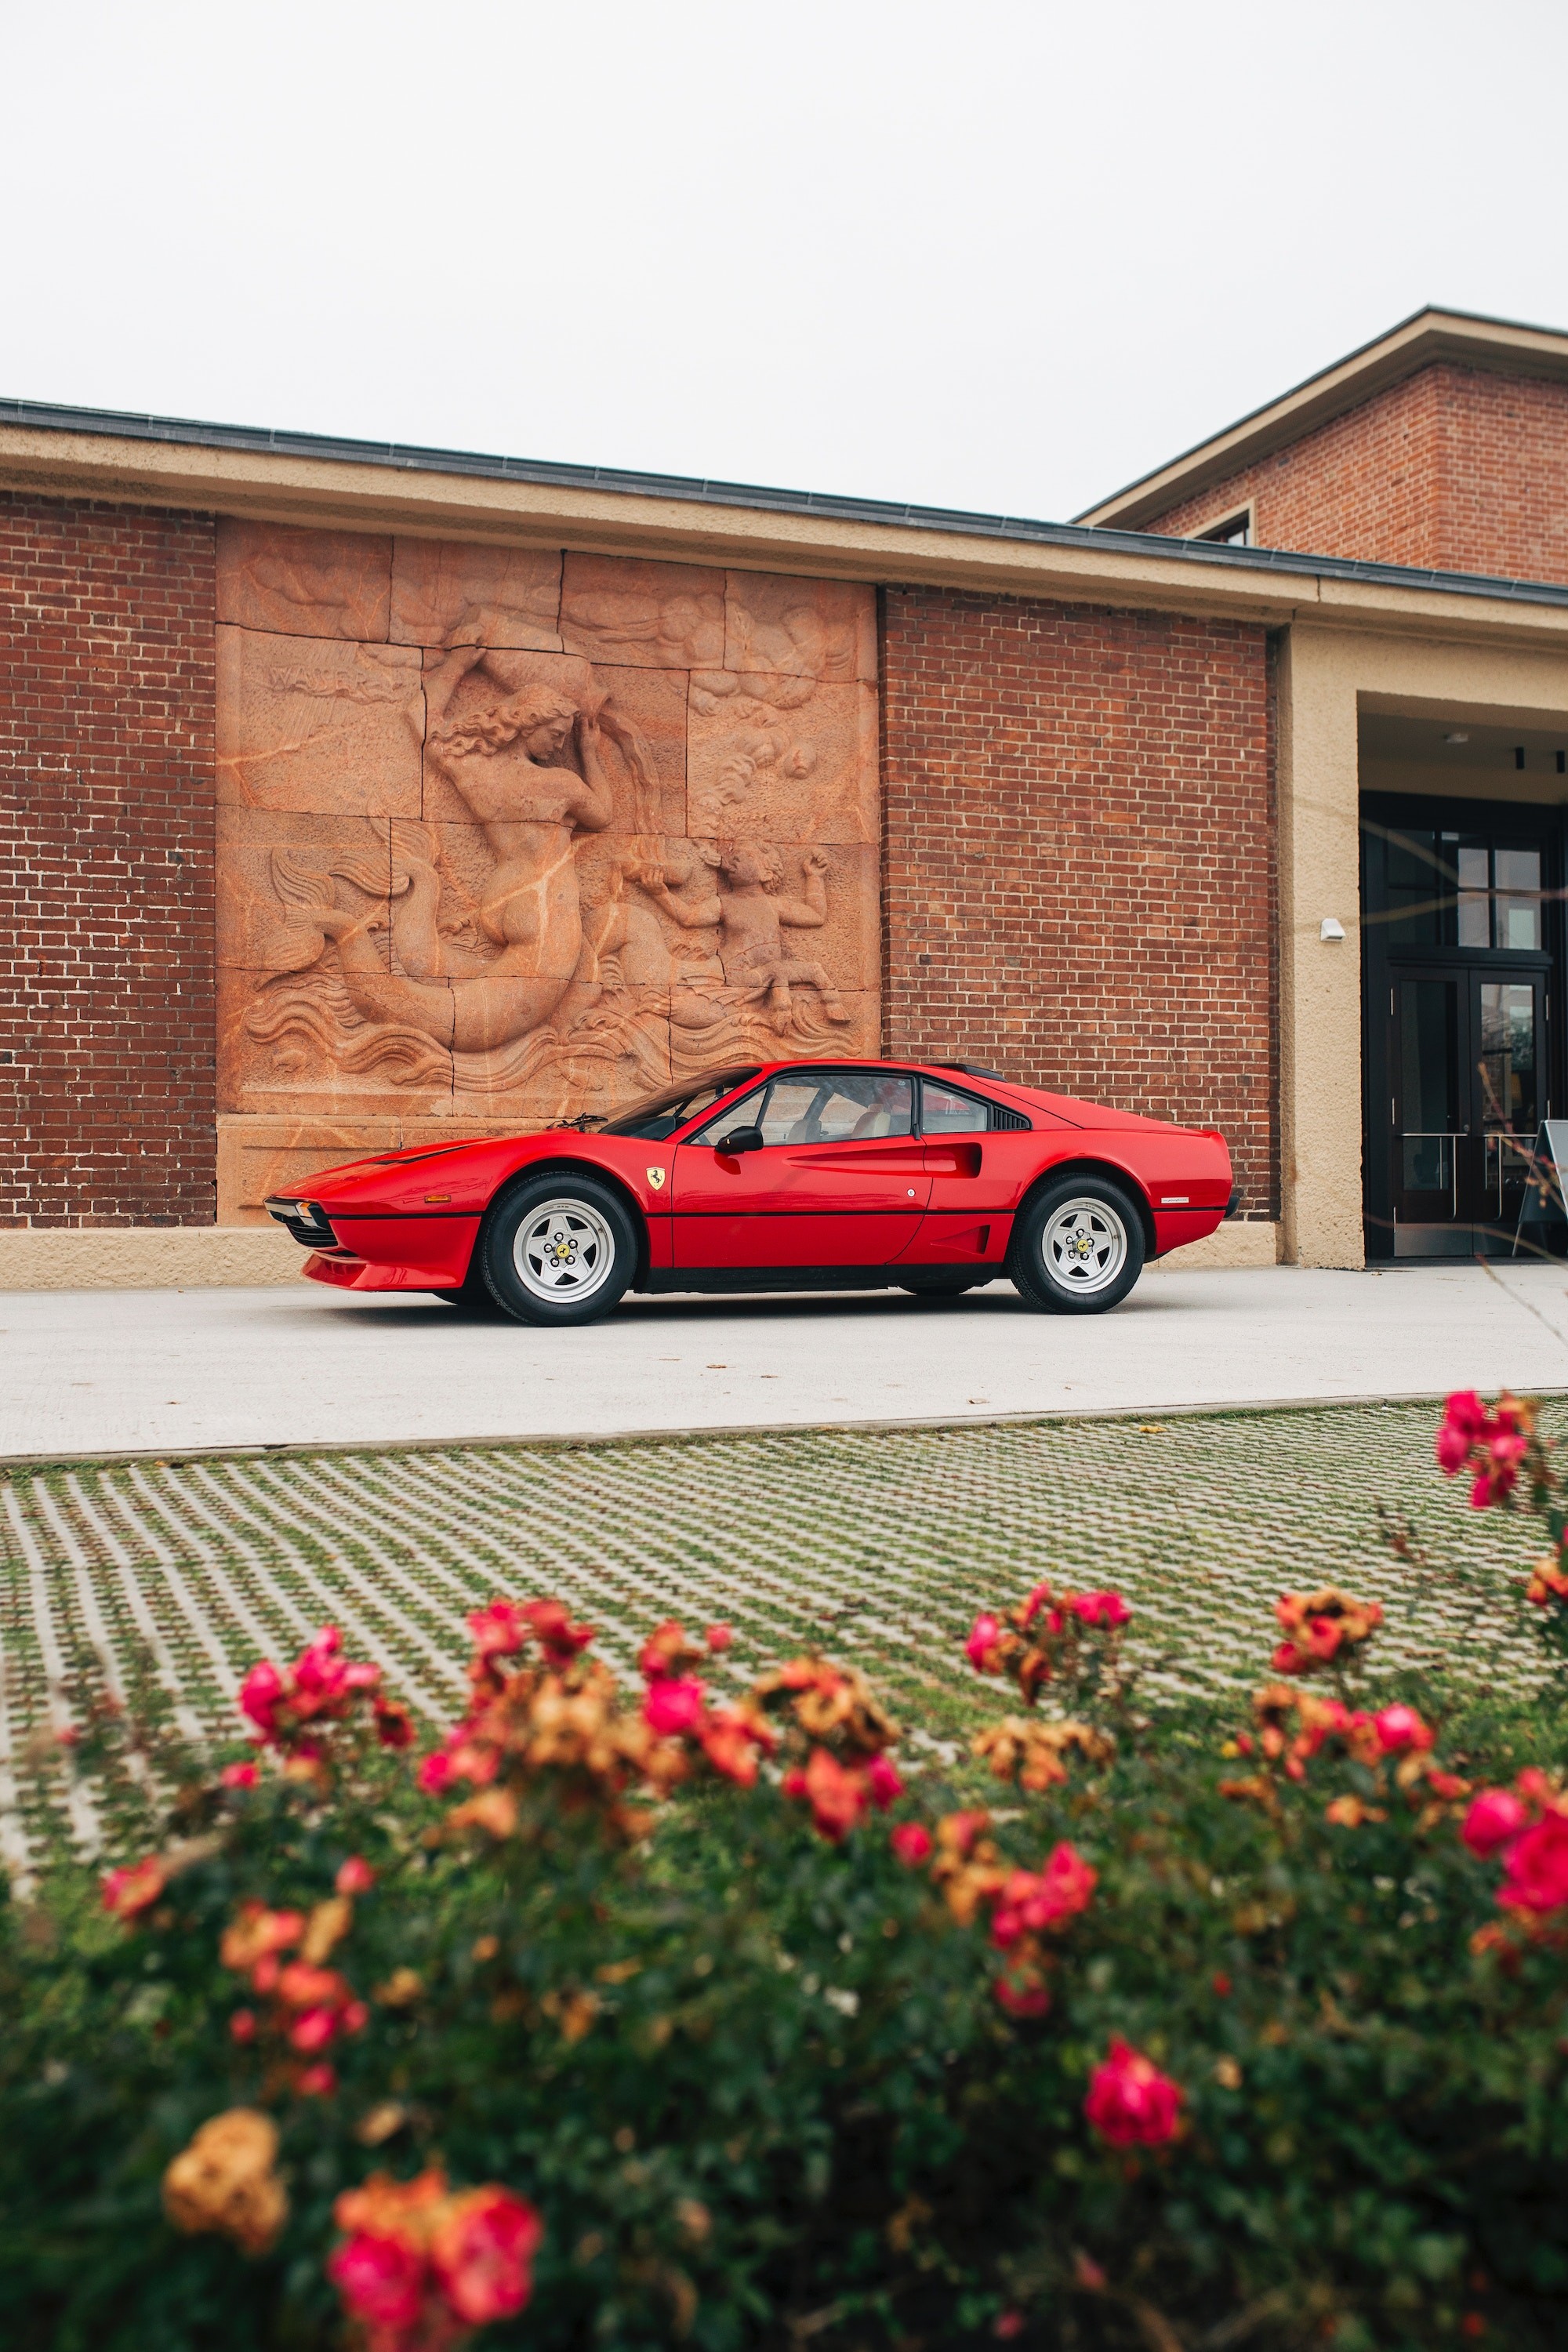 Классический суперкар Ferrari 1984 года выпуска с уменьшенным объемом двигателя